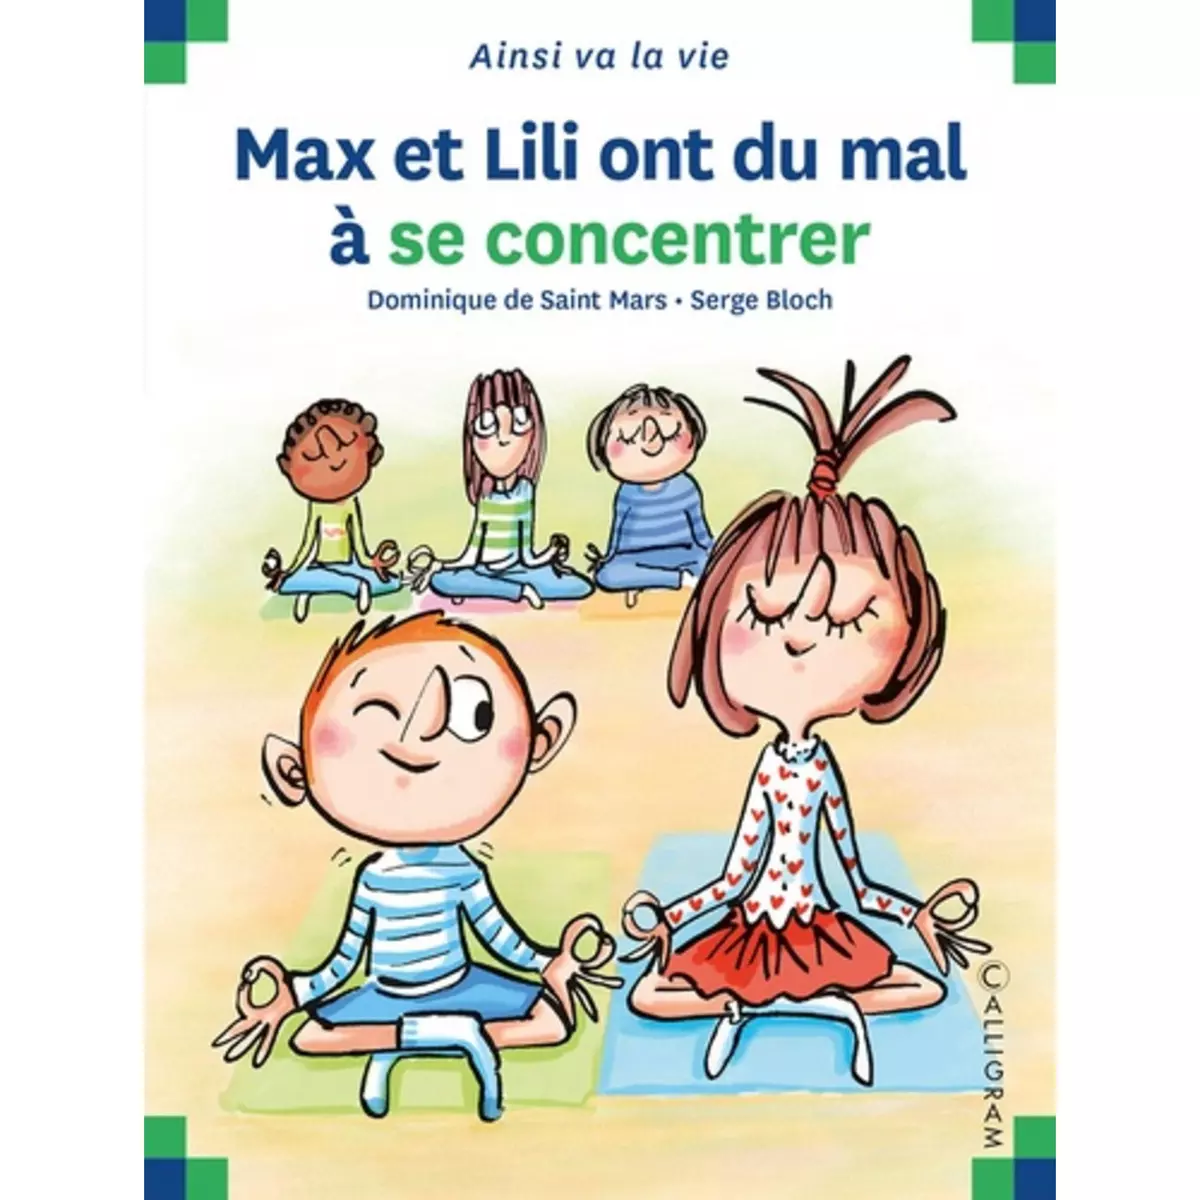  MAX ET LILI ONT DU MAL A SE CONCENTRER, Saint Mars Dominique de